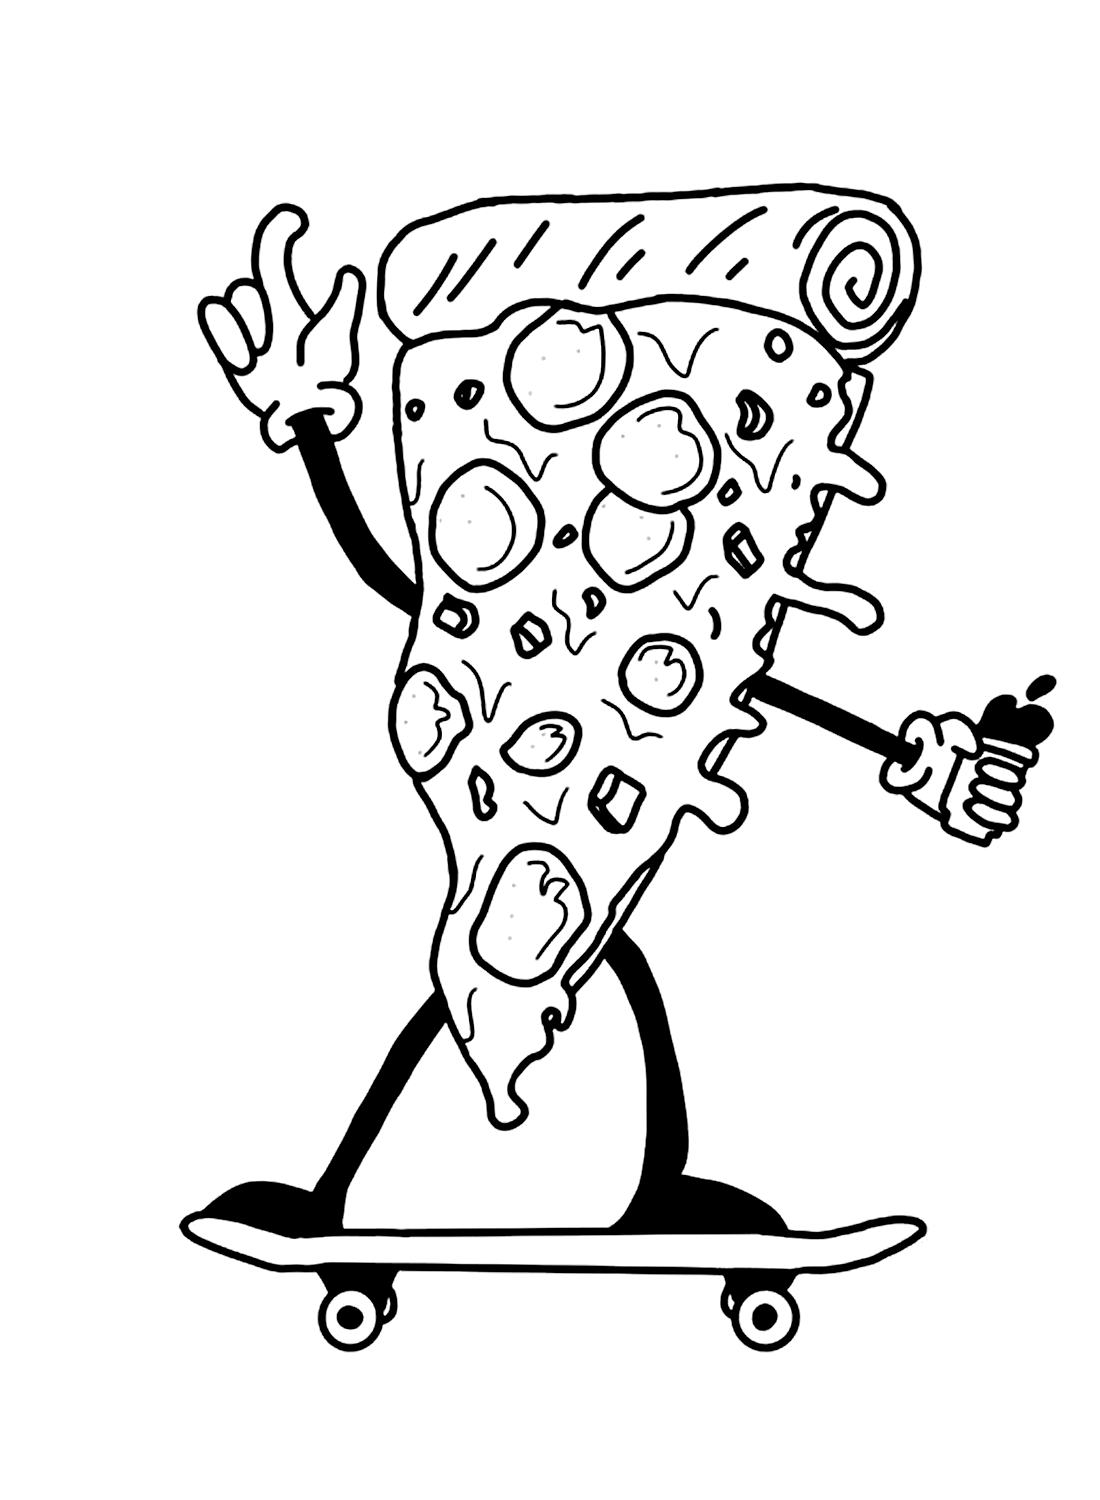 Coloring Sheet Skating Pizza